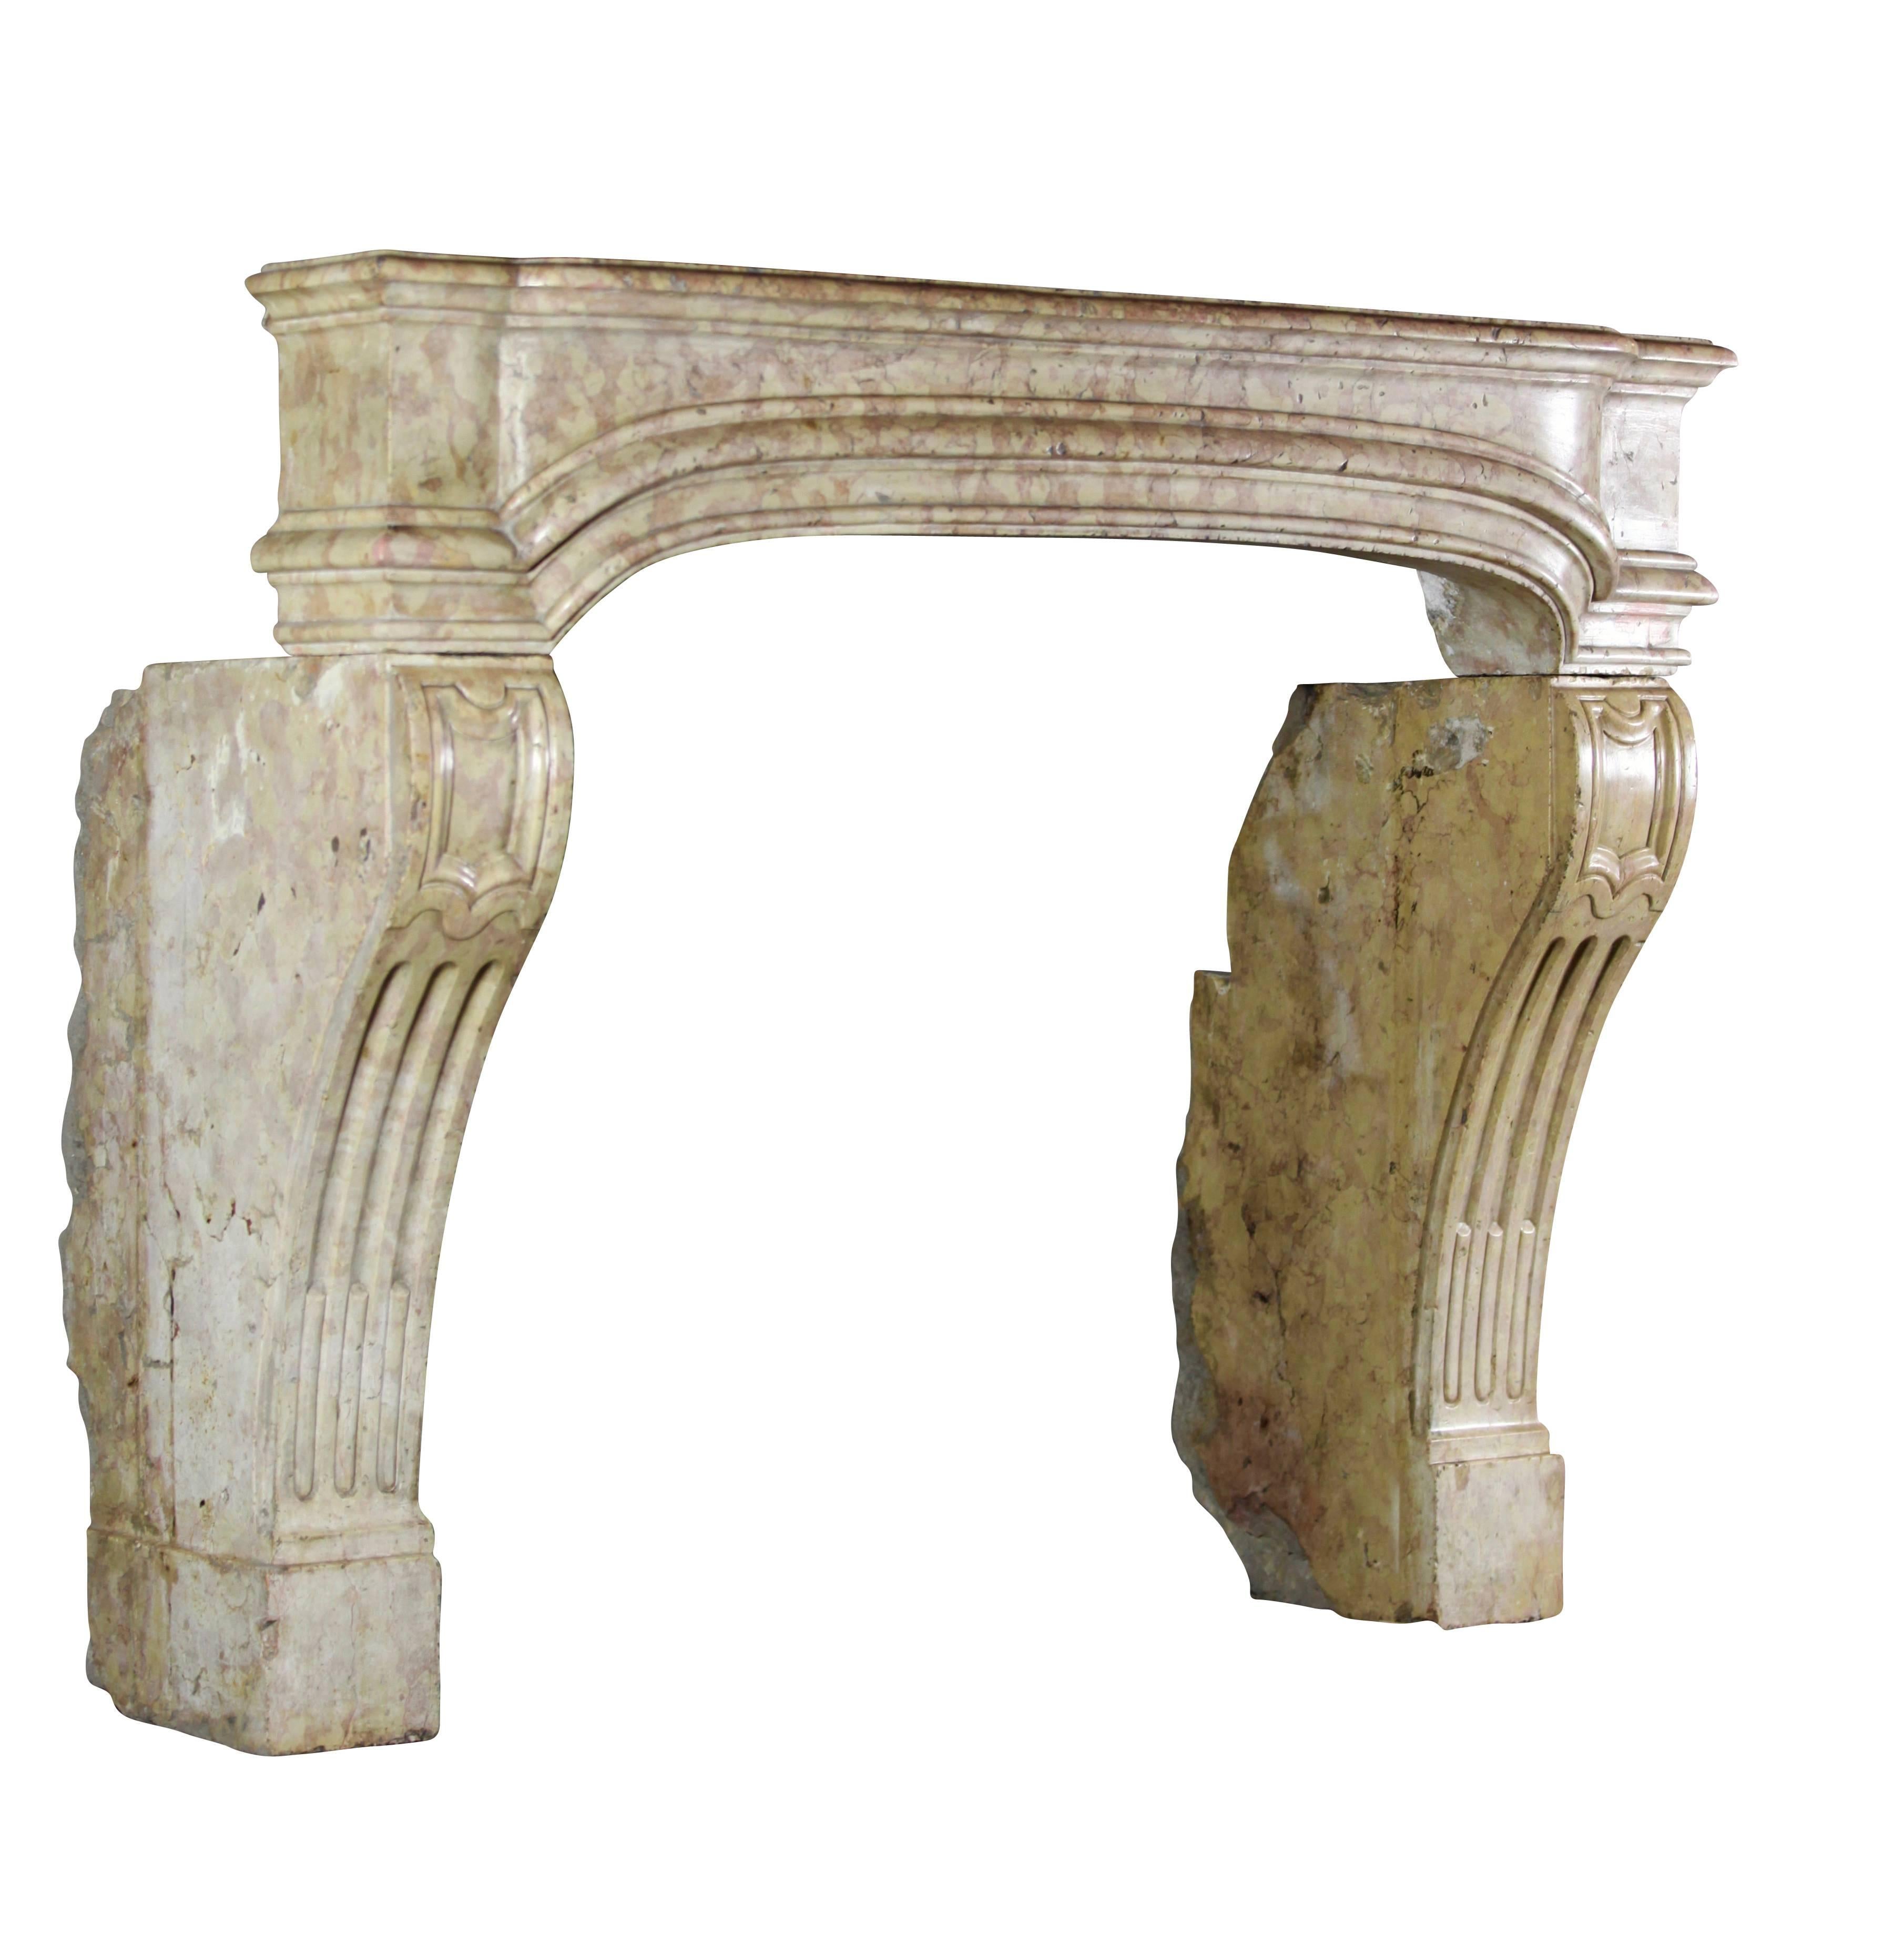 Les proportions de cet ancien contour de cheminée en pierre marbrière française sont très petites et parfaites pour une pièce ou un foyer plus petit. La profondeur de la sculpture est tout à fait unique.

Mesures :
135 cm EW 53.14